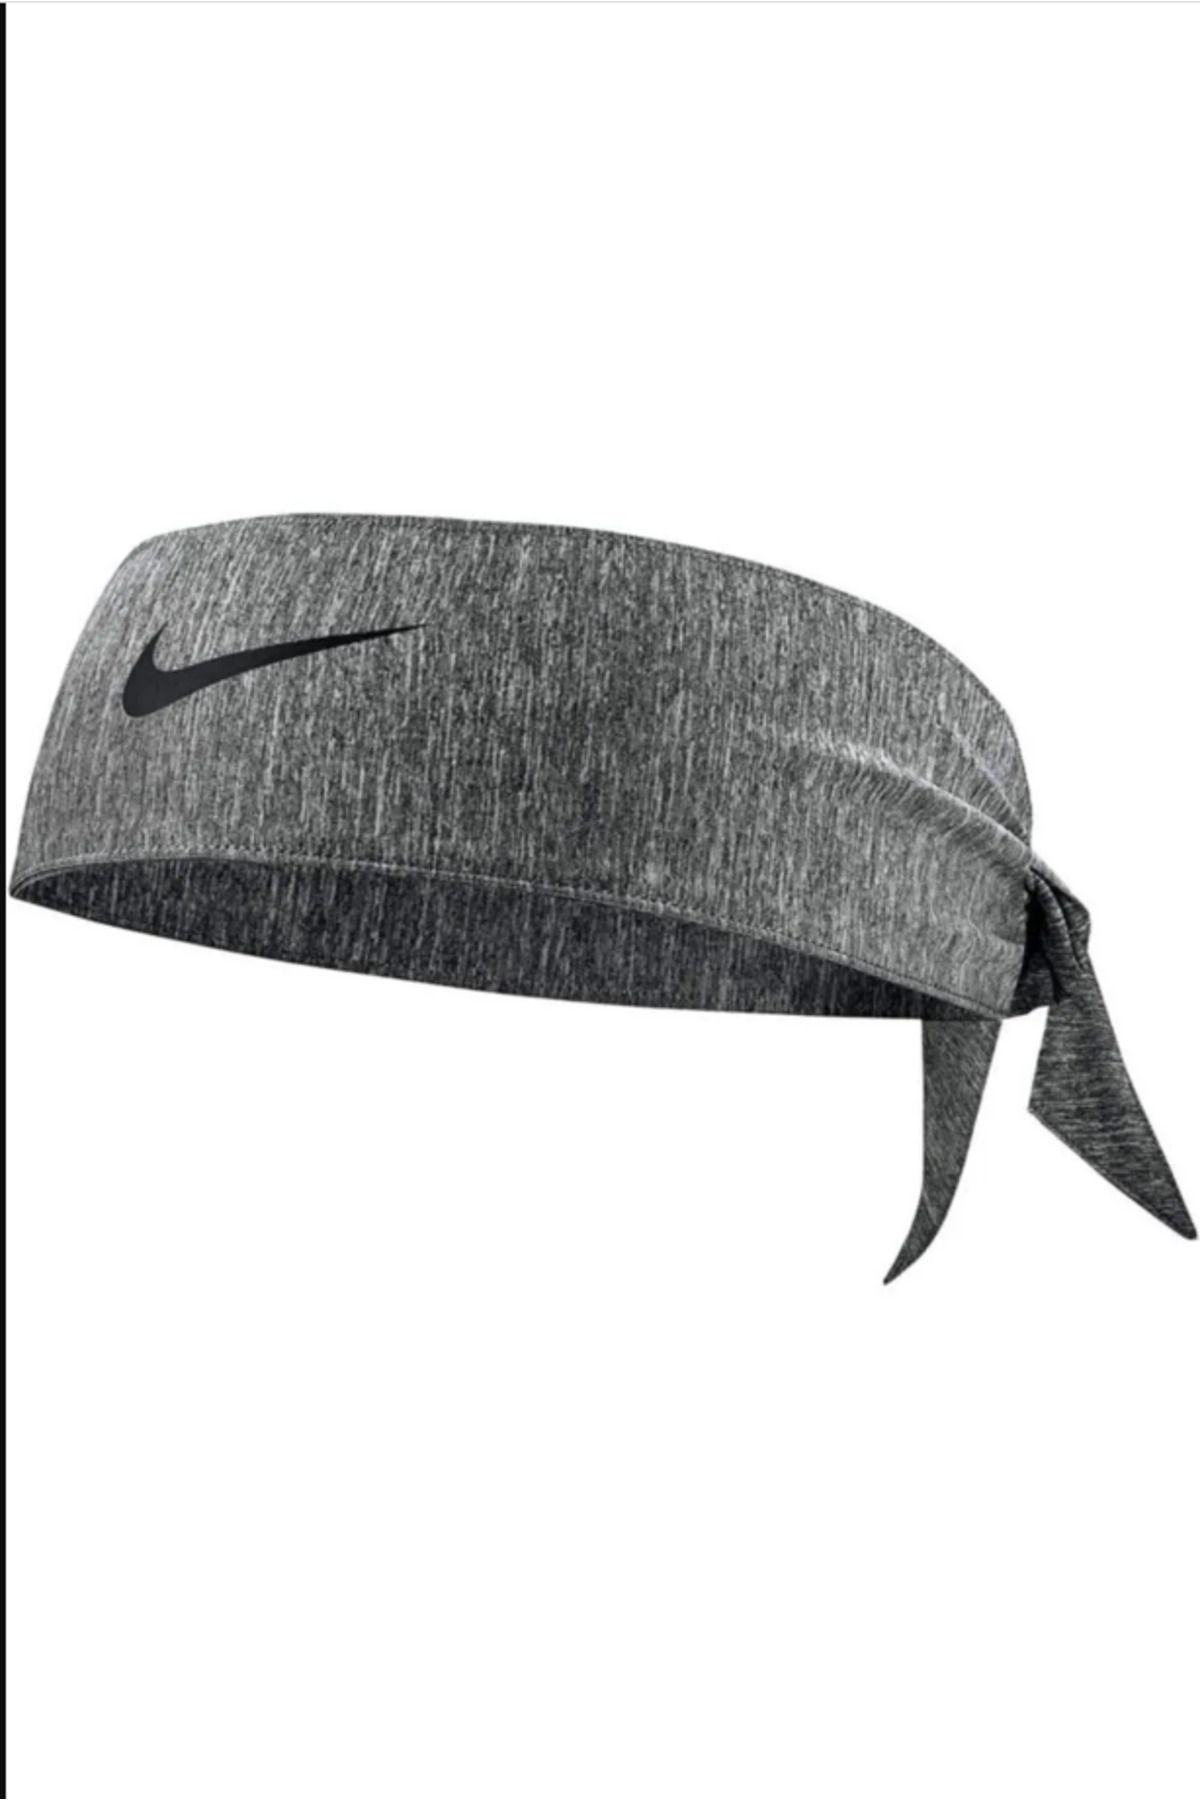 Nike Dri-fit Head Tie 4.0 Saç Bandı